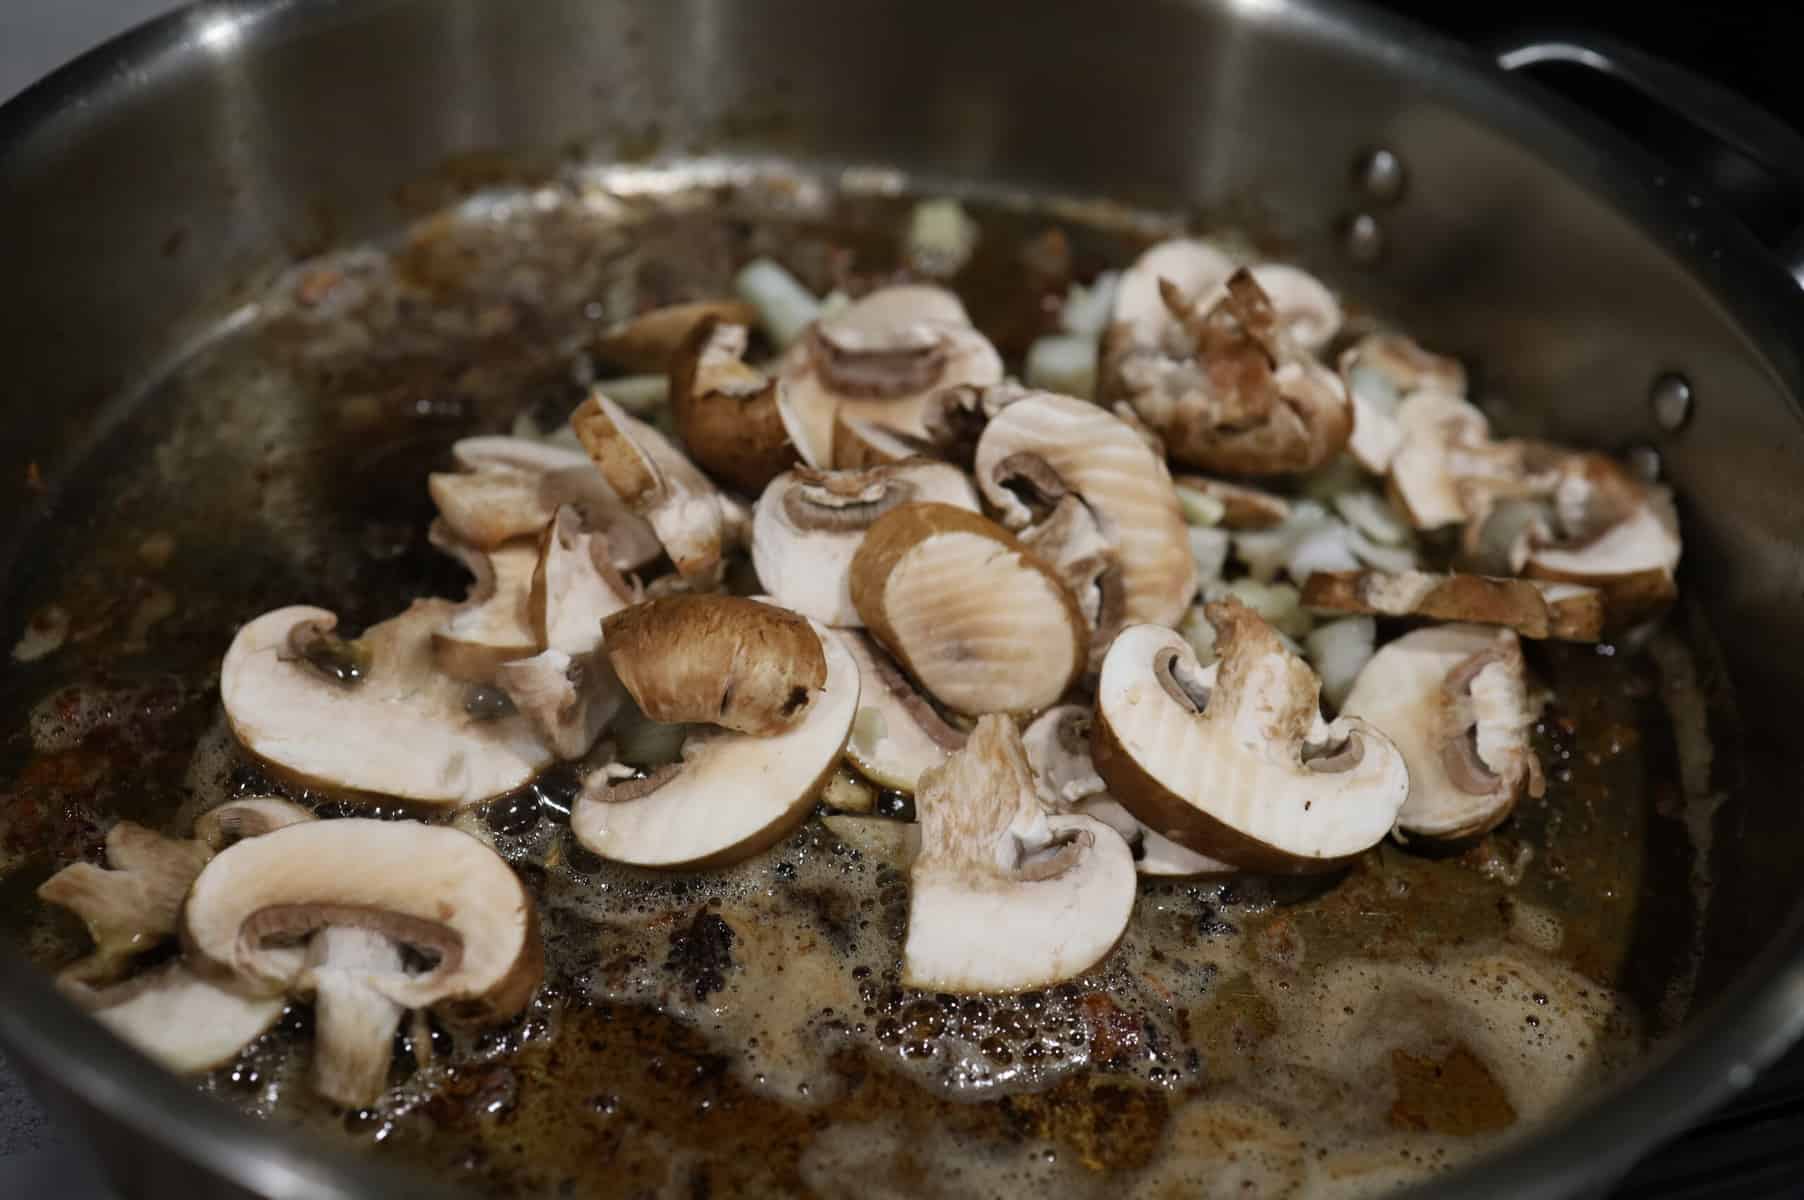 fresh cut mushrooms in the pan.